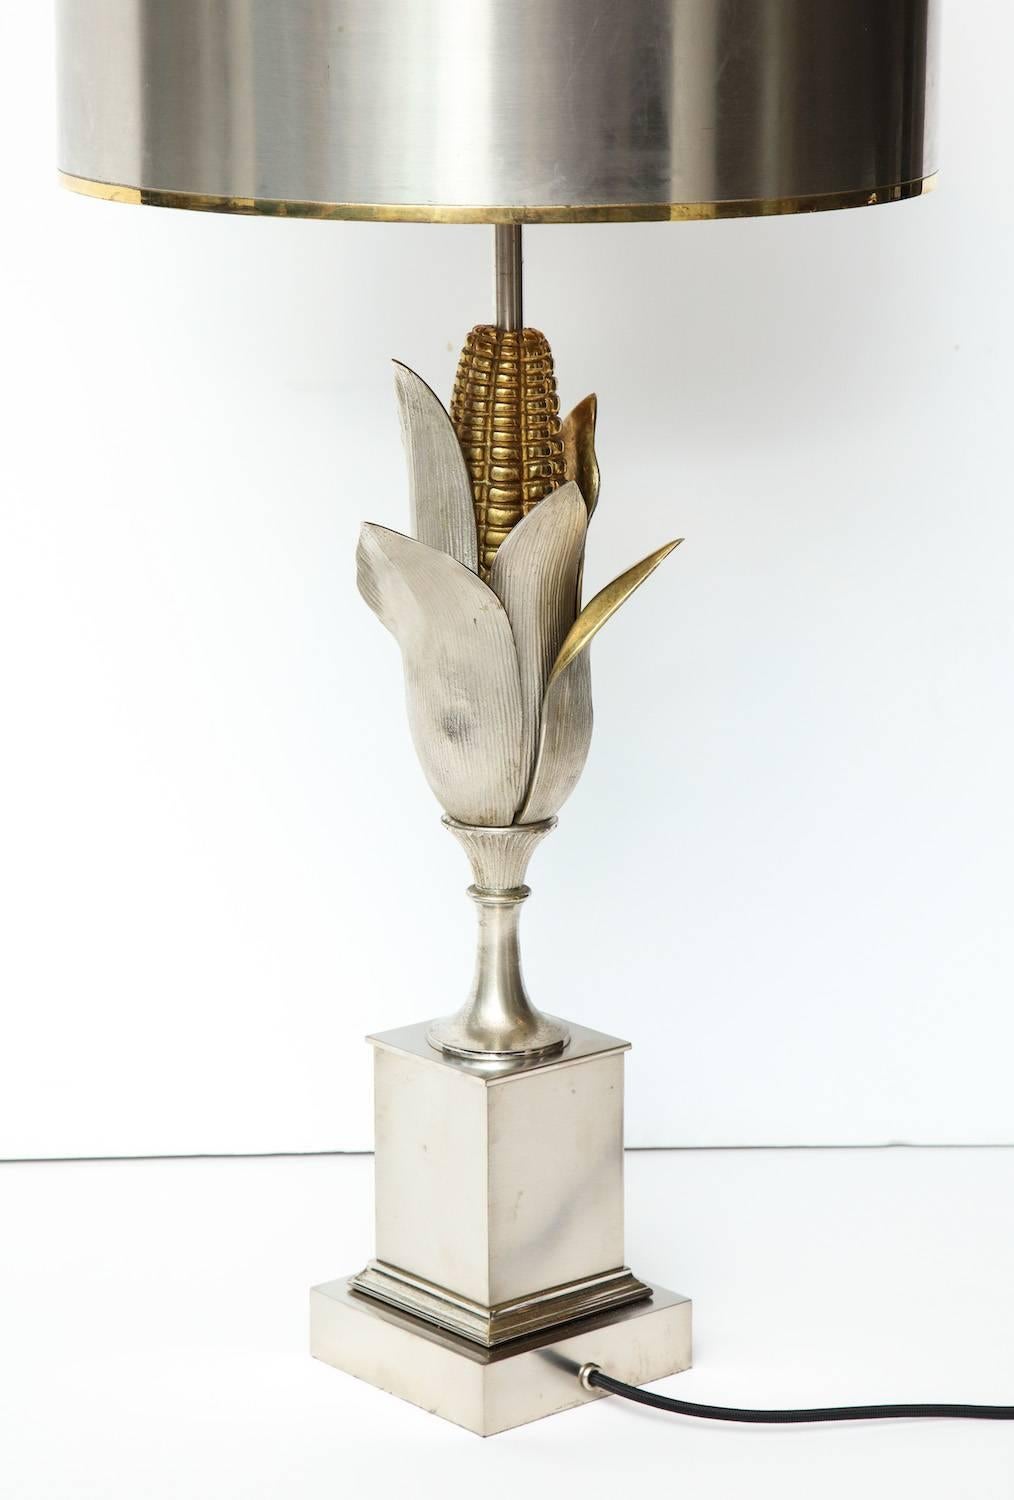 Lampe à poser Sweet Corn de Charles et Fils.
Lampe sculpturale en bronze argenté en forme d'enveloppe de maïs. Surélevé sur un socle, avec trois douilles de candélabre et un abat-jour en métal d'origine. Estampillé sur la partie inférieure de